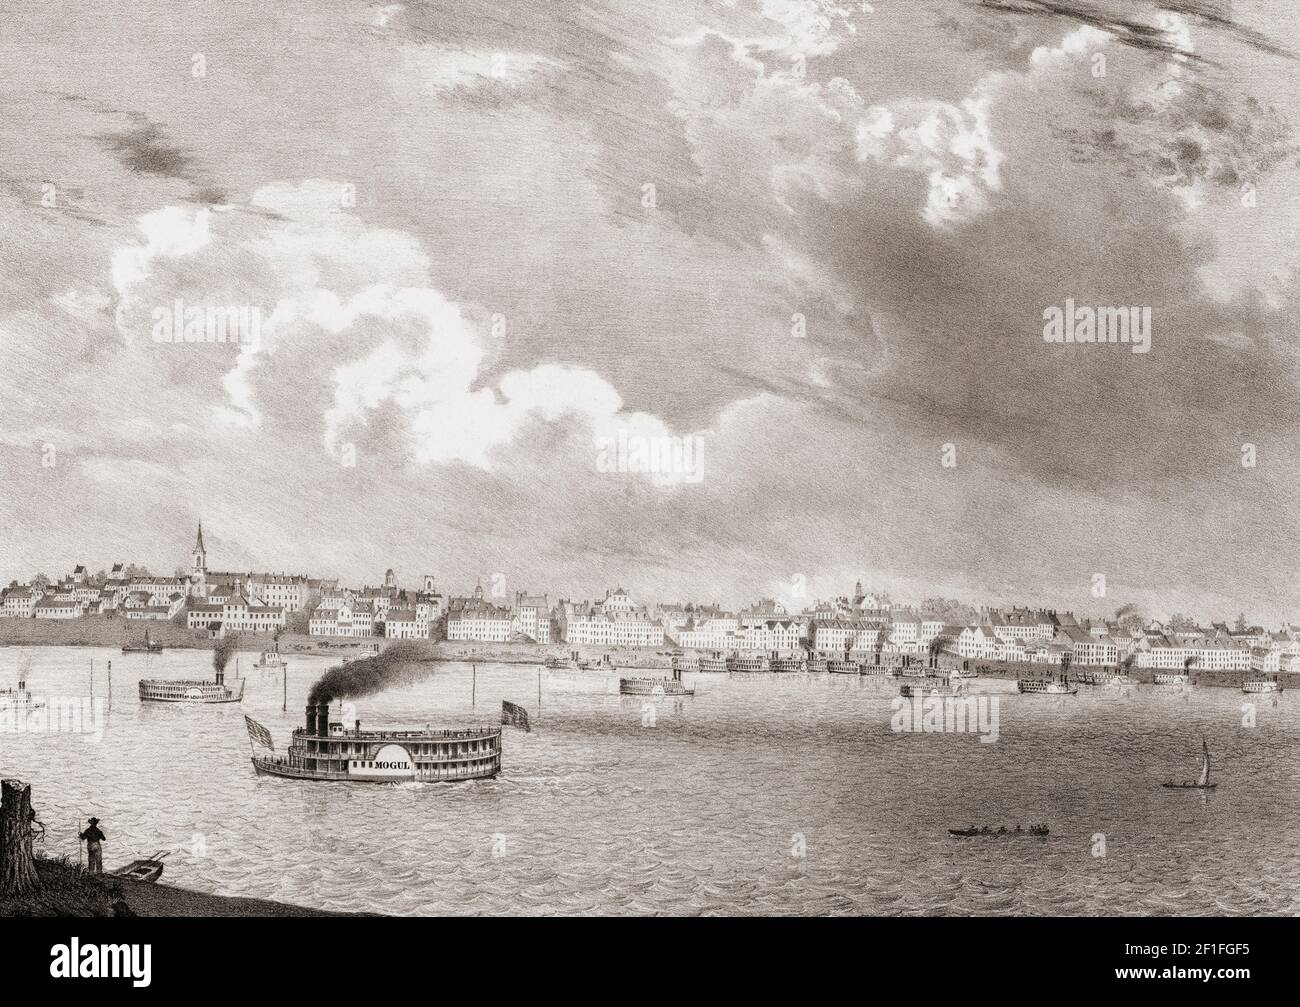 St. Louis, Missouri, États-Unis d'Amérique au début du XIXe siècle, avec des bateaux à aubes sur le Mississippi. Lithographie de T. Moore après une œuvre de E.W. Playter. Banque D'Images